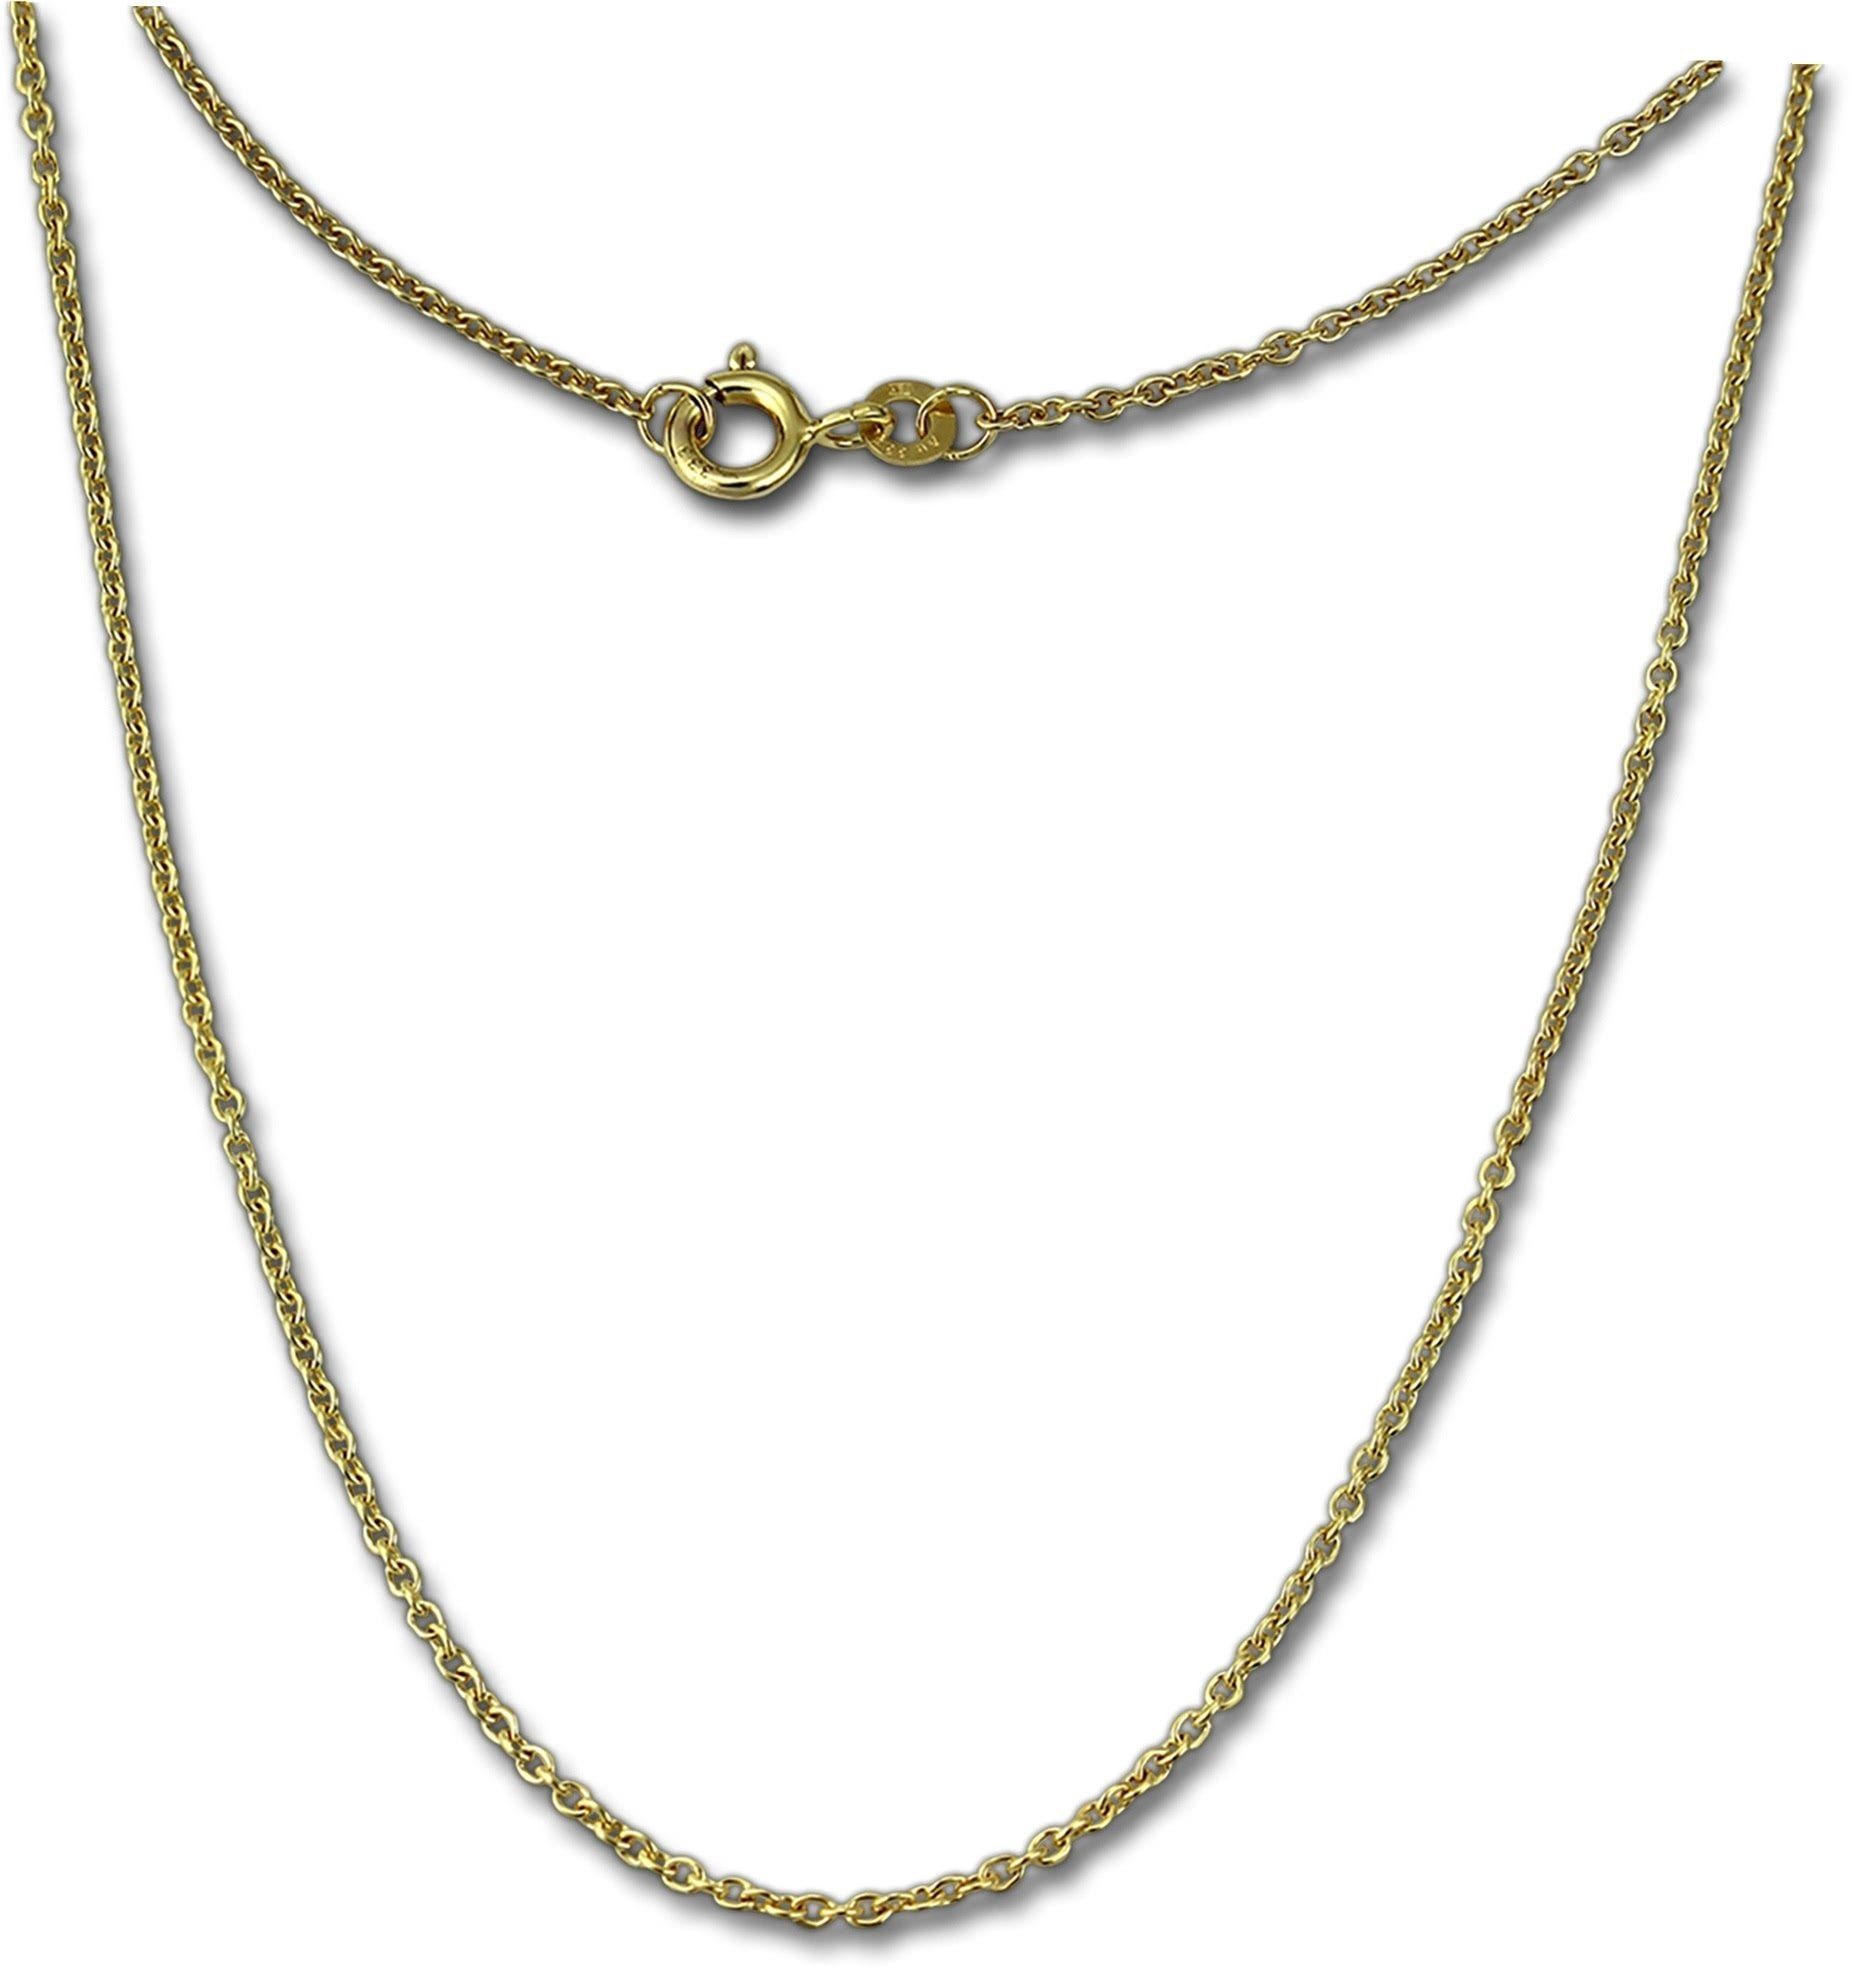 GoldDream Goldkette GoldDream Collier Halskette 8K Gold (Collier), Damen Colliers Halskette 70cm, 333 Gelbgold - 8 Karat Echtgold, 333er